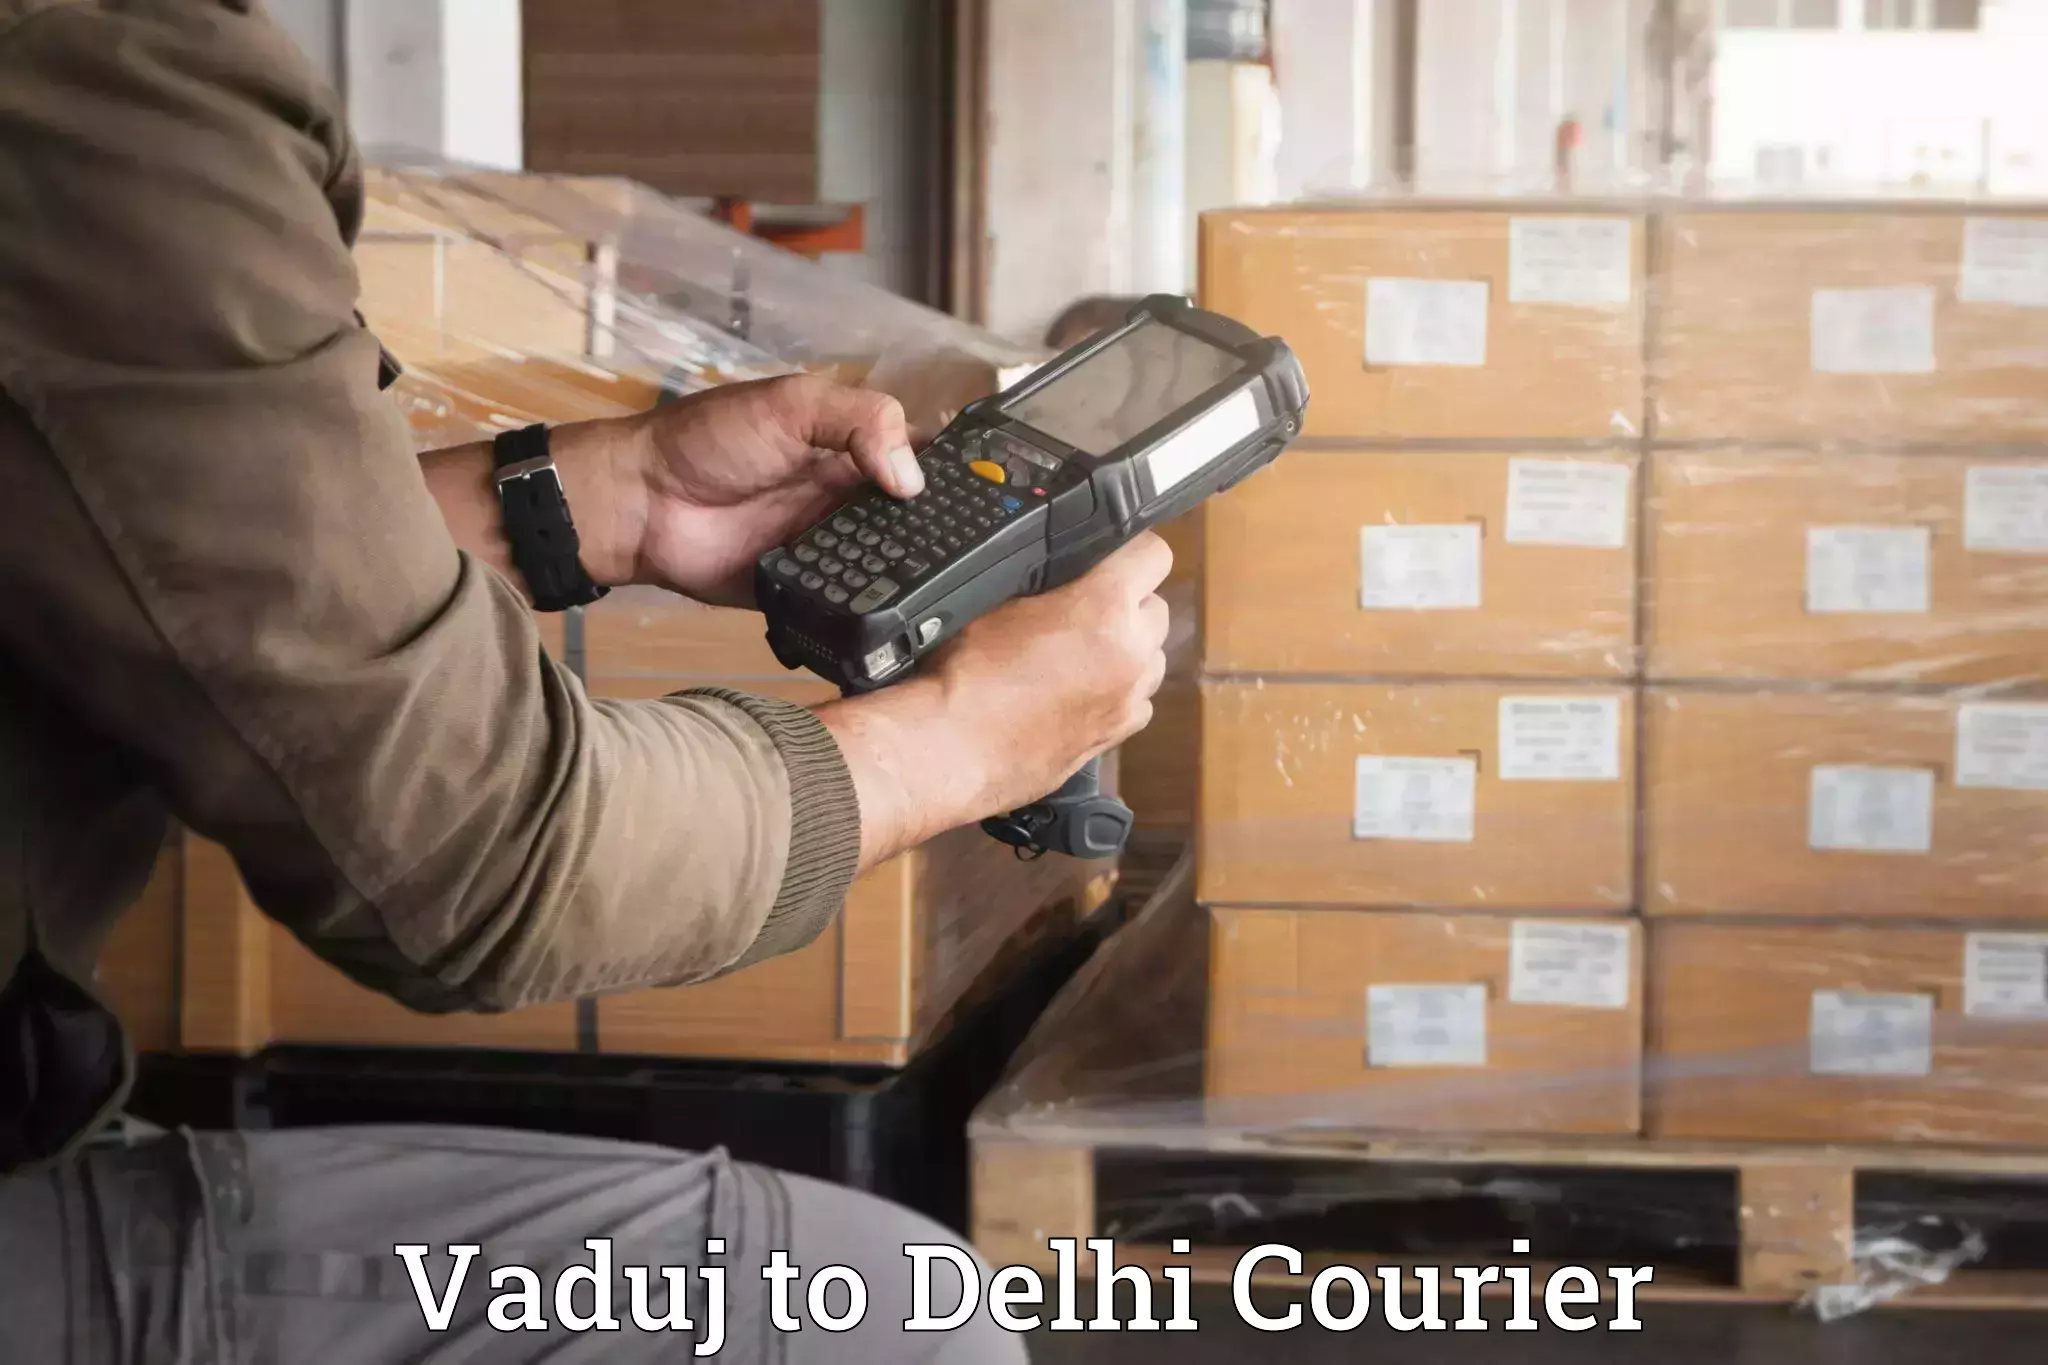 Luggage delivery estimate Vaduj to IIT Delhi